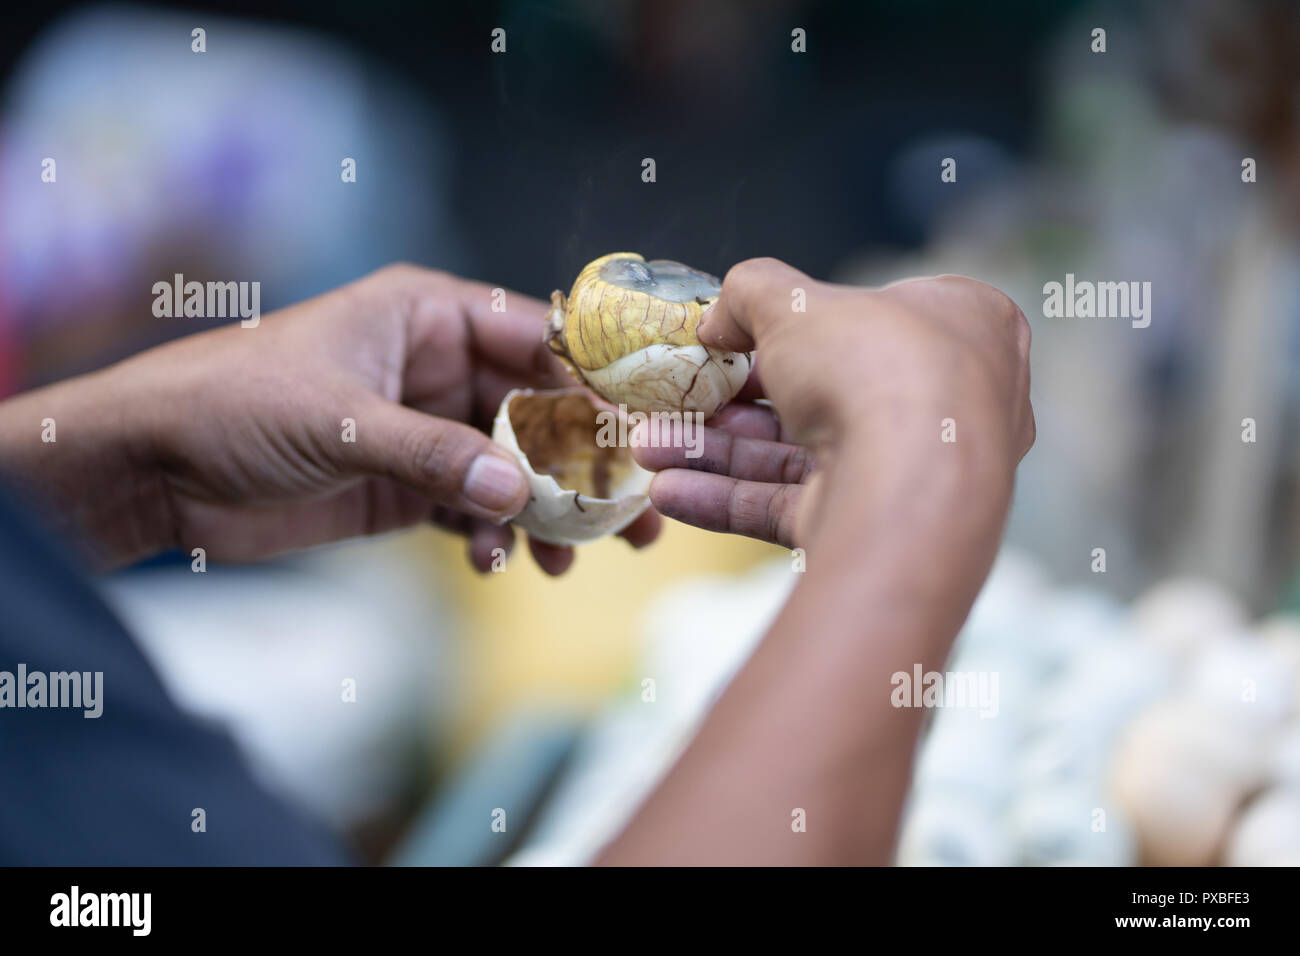 Balut ist ein befruchtetes Ei inkubiert Ente zwischen 14-21 Tage dann gekocht oder gedünstet. eine Delikatesse auf den Philippinen, die gemeinhin als Snack gegessen als Stockfoto